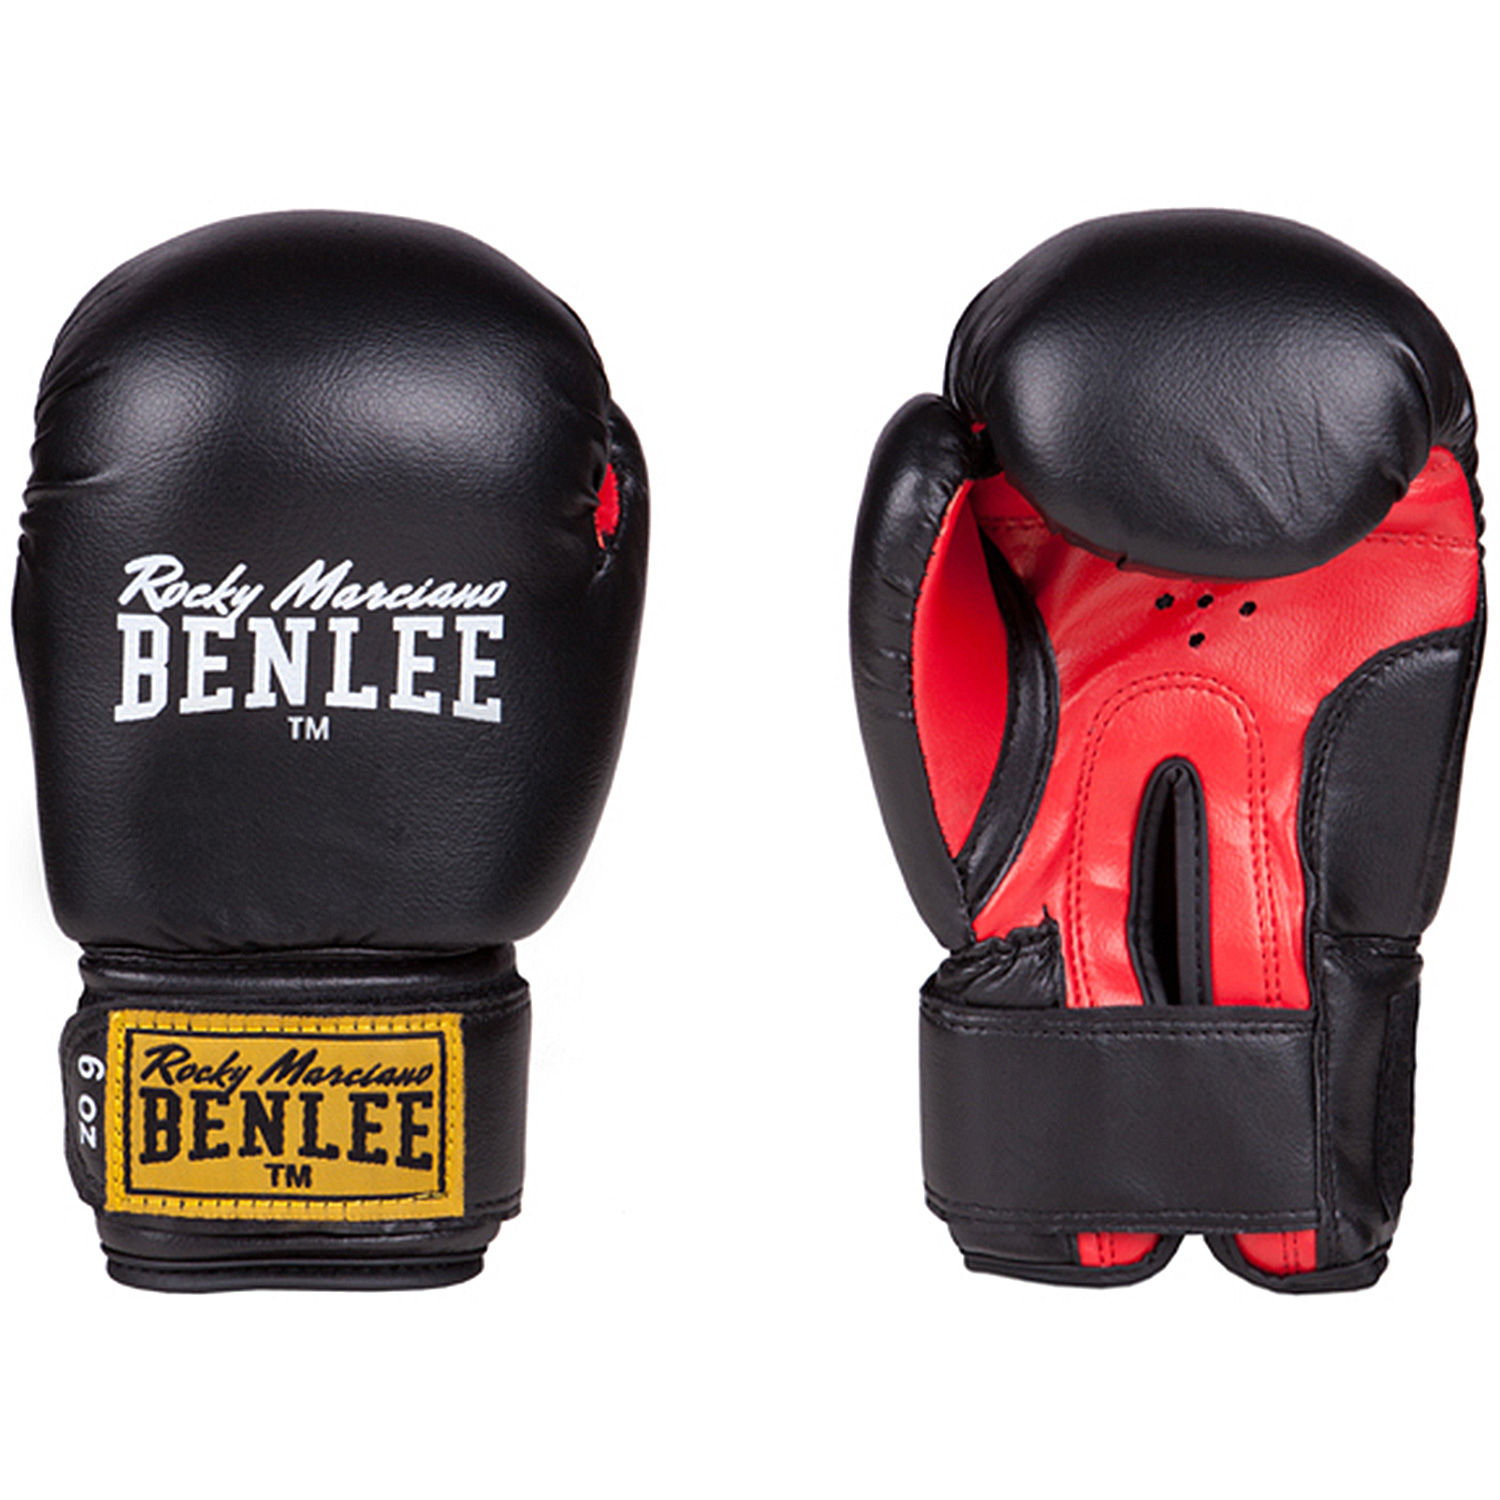 Set De Boxeo Benlee Punchy